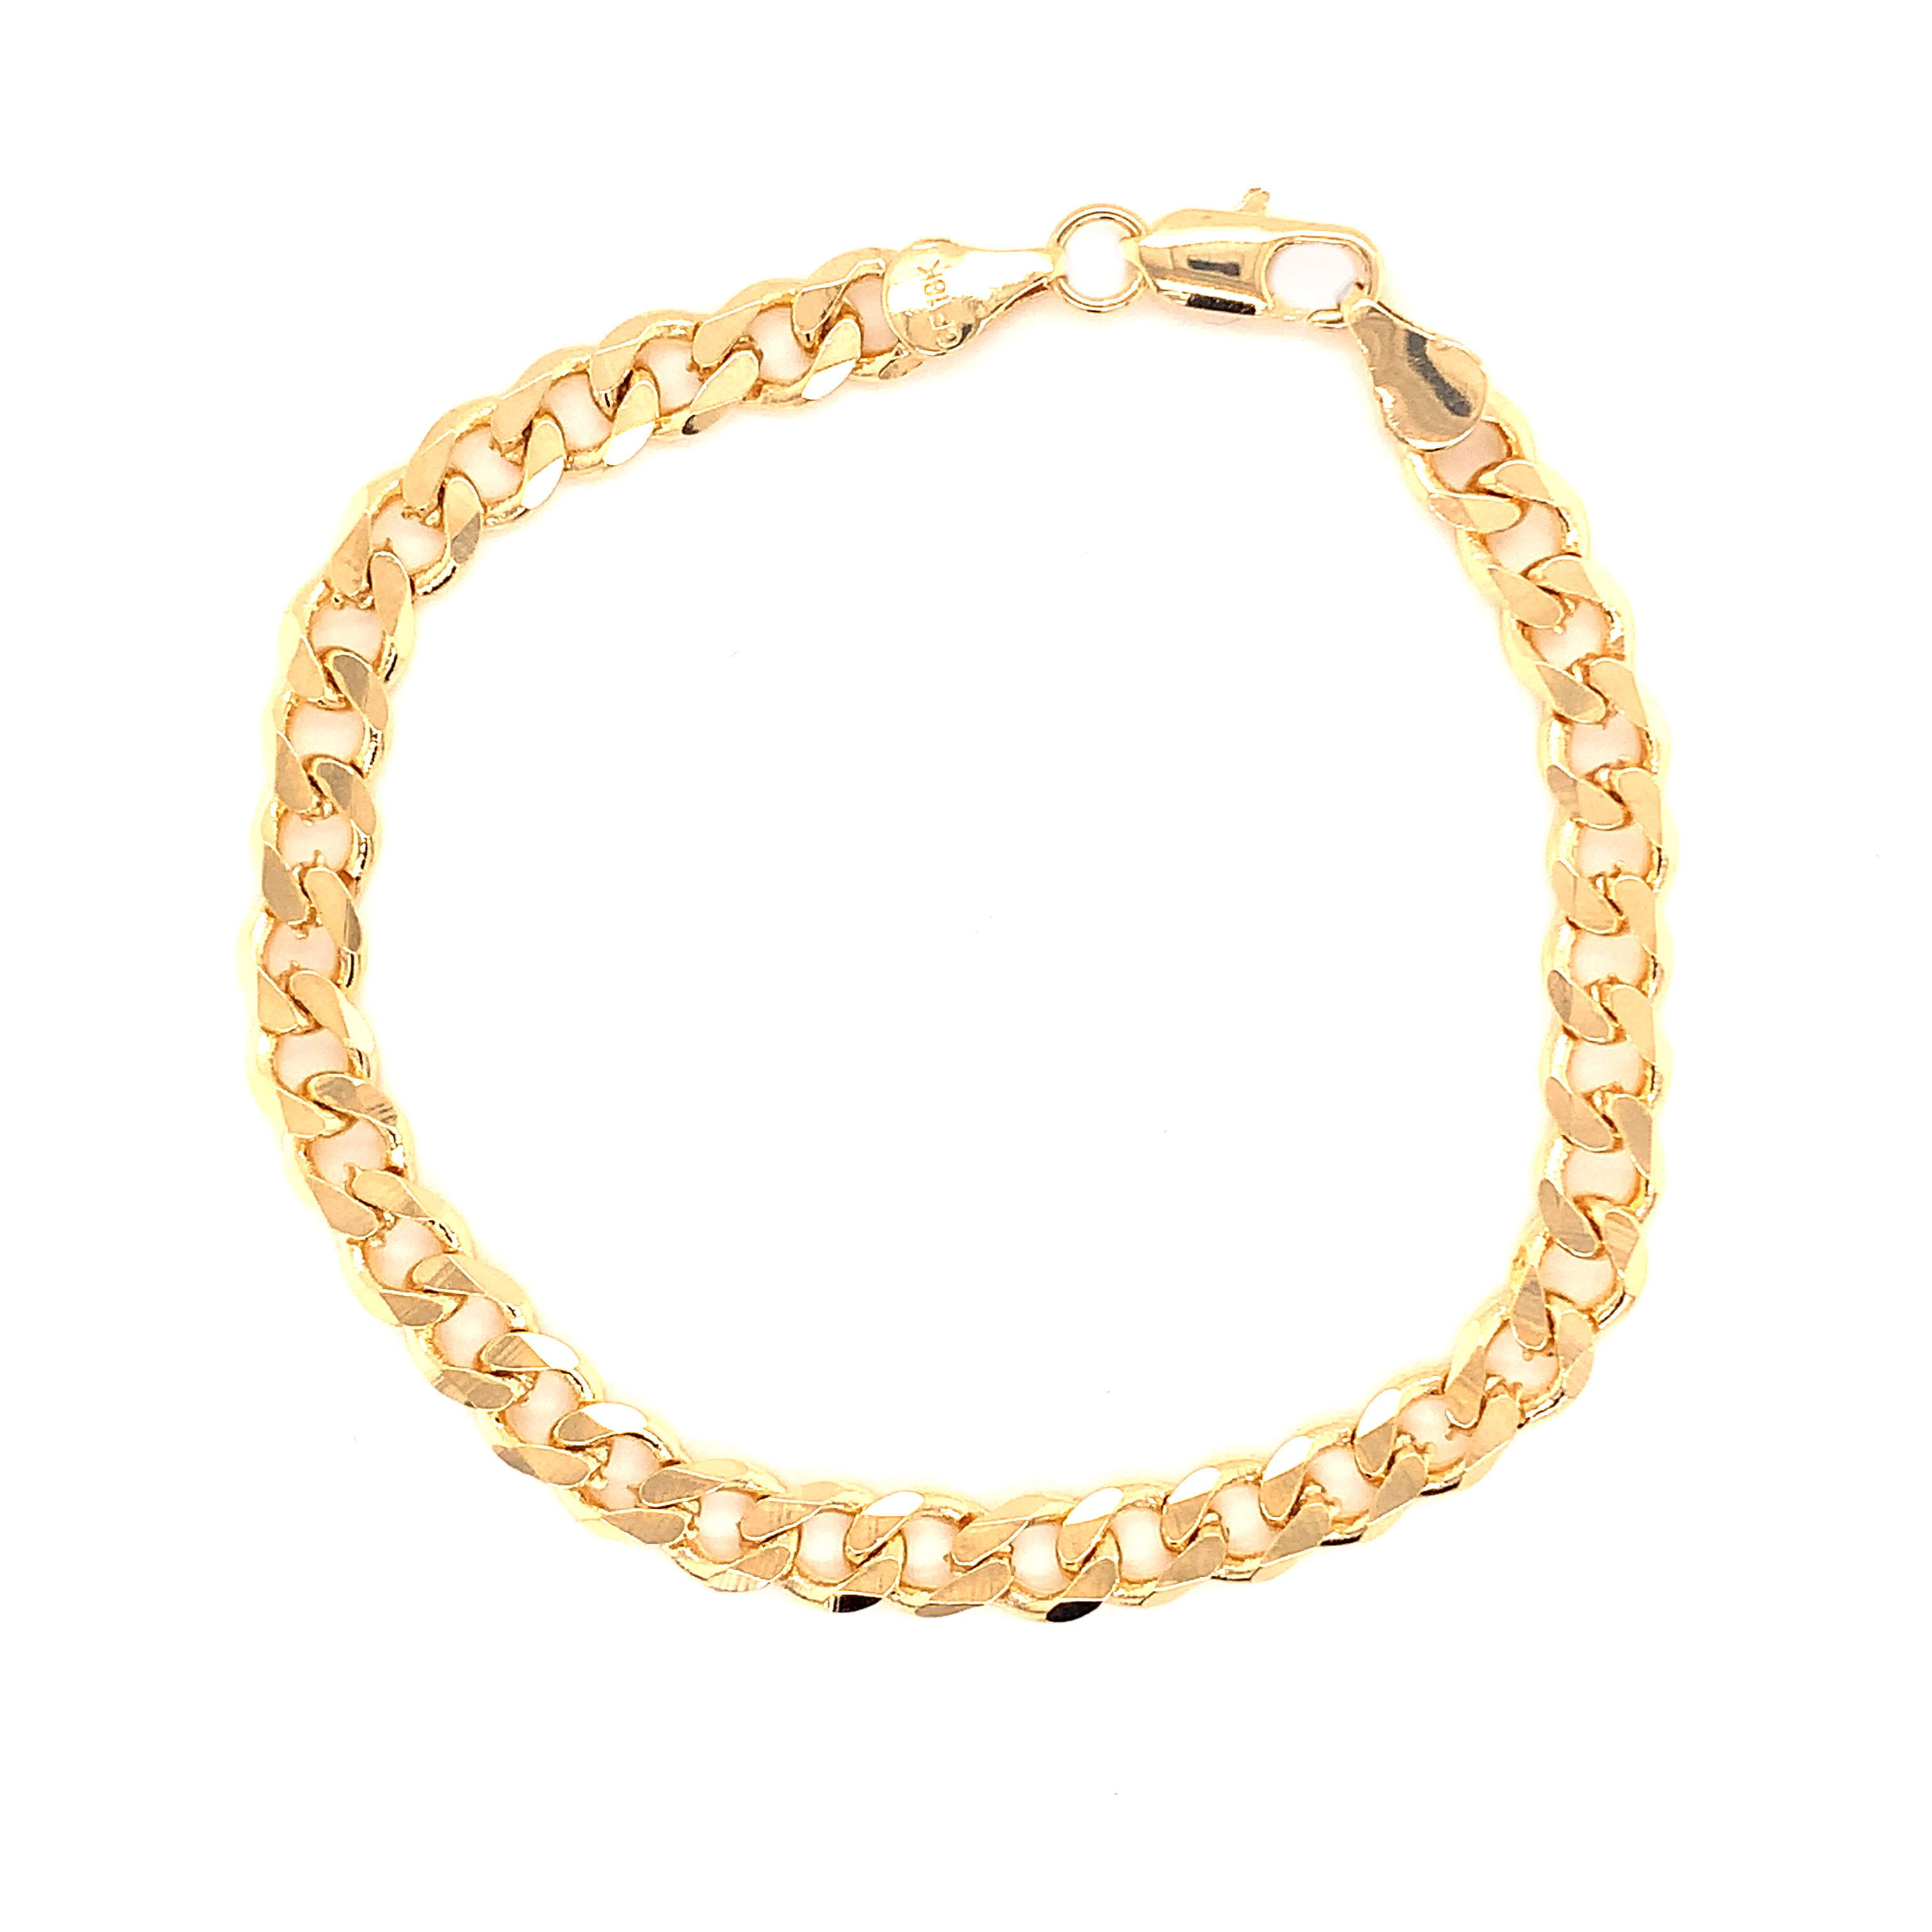 Curb Bracelet - 6.5" - Gold Filled